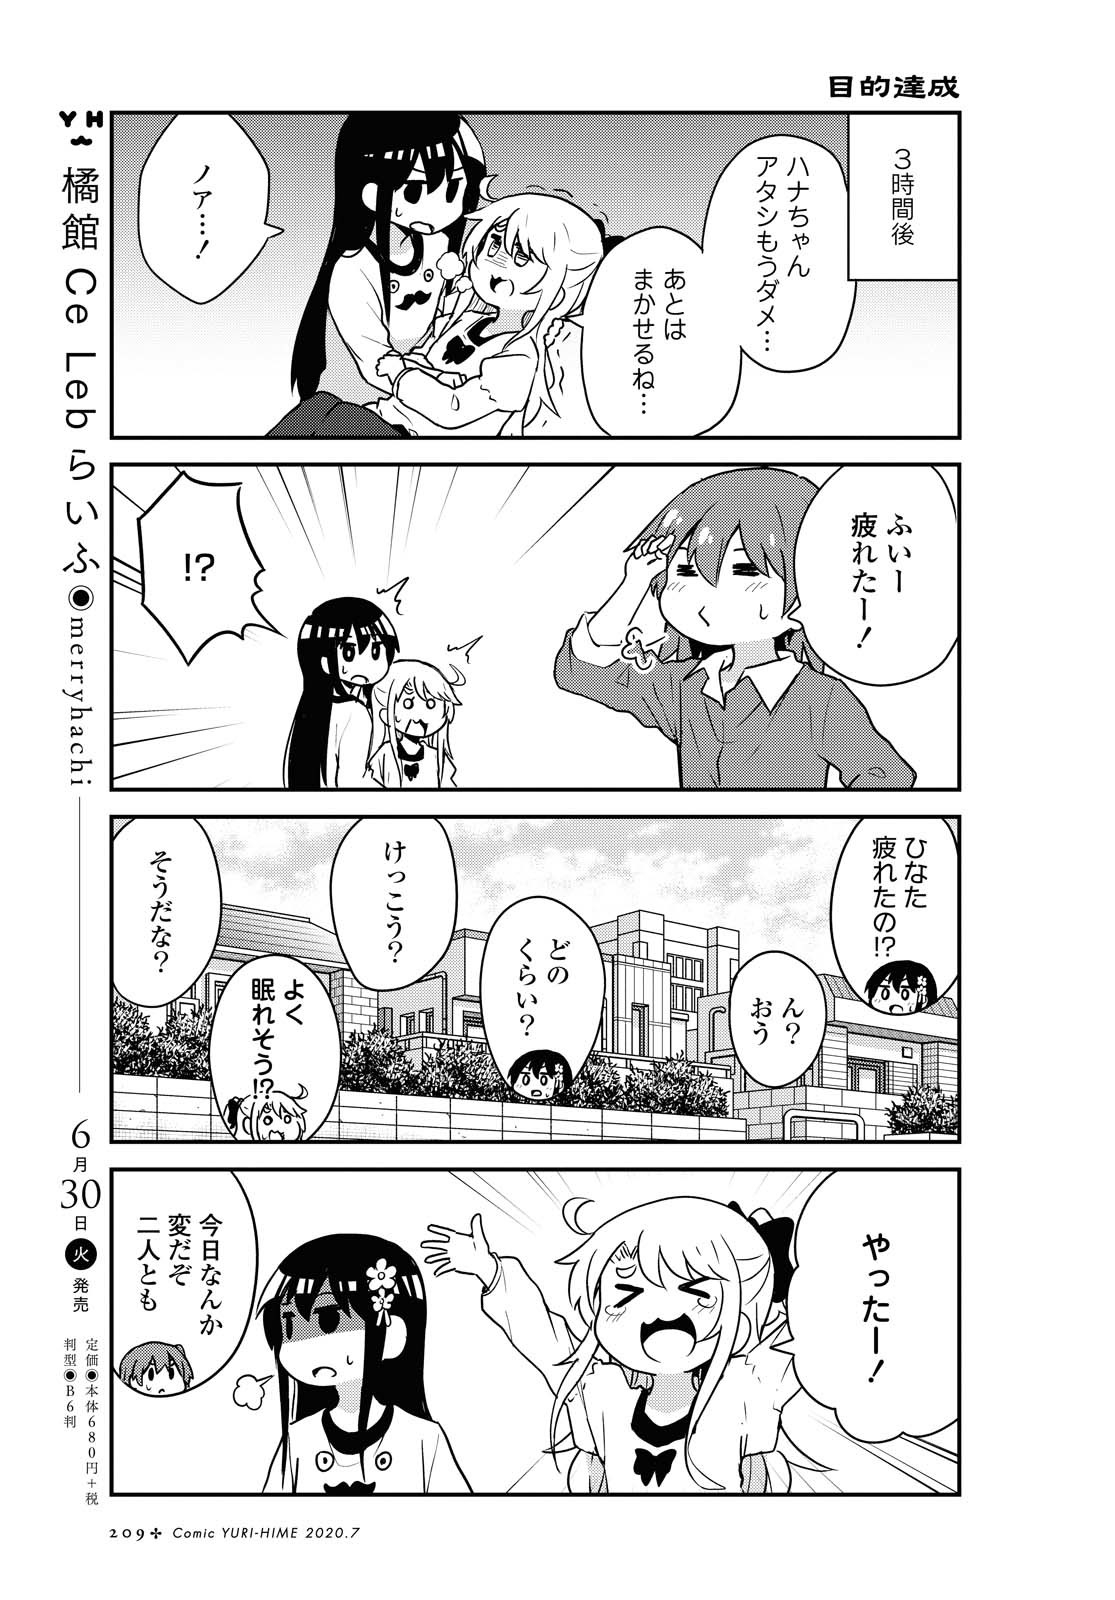 Watashi ni Tenshi ga Maiorita! - Chapter 66 - Page 11